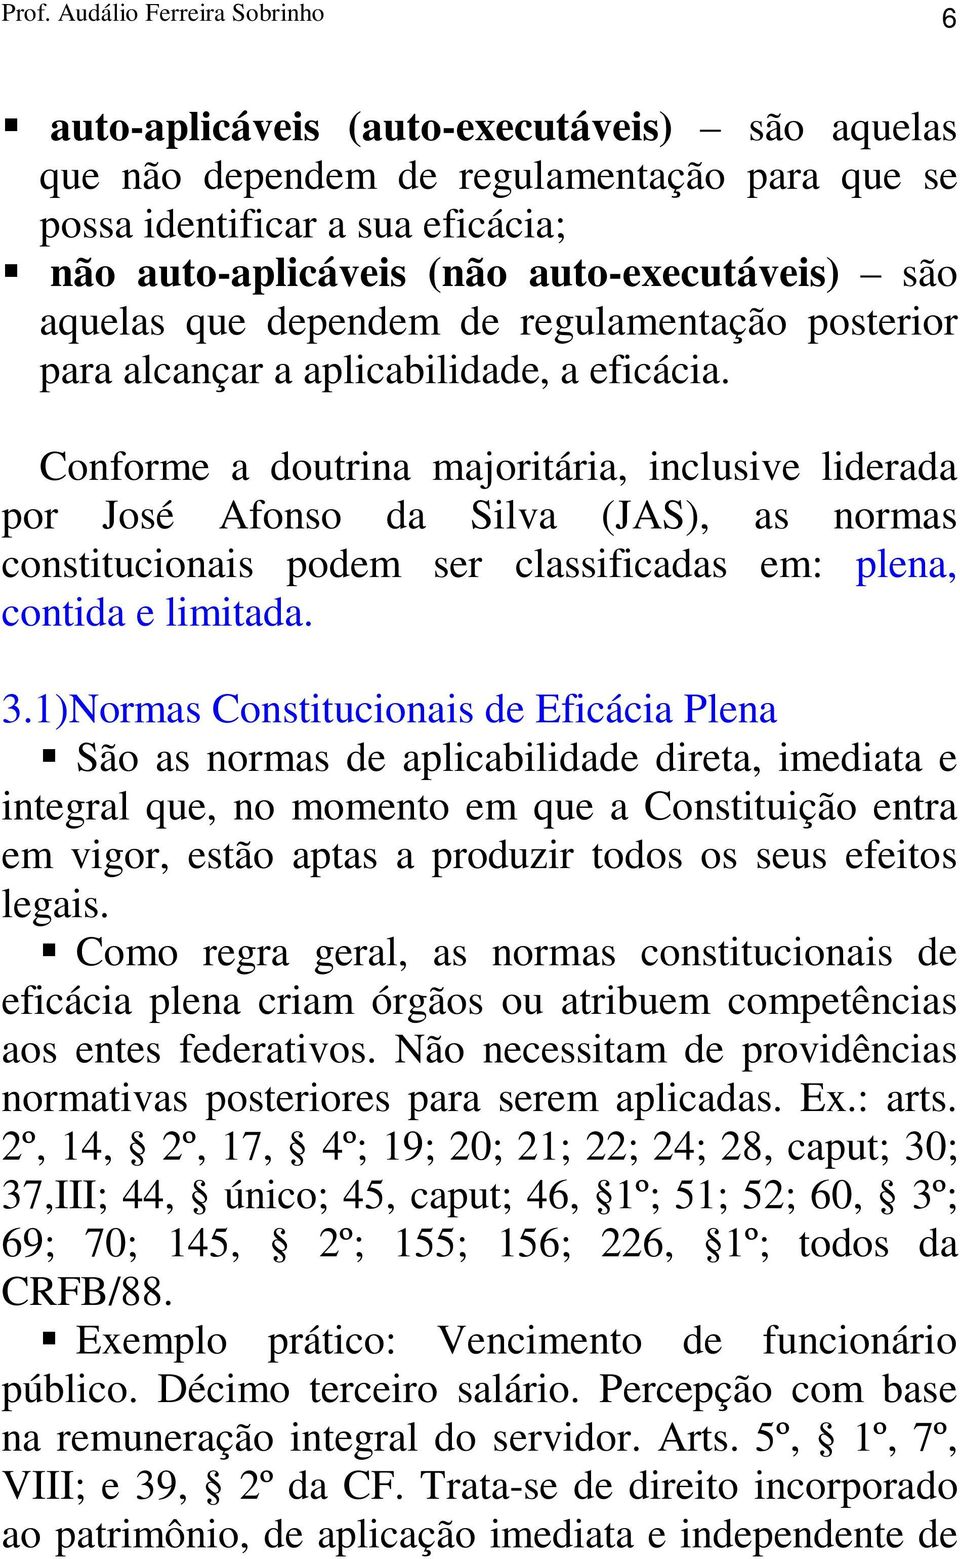 Conforme a doutrina majoritária, inclusive liderada por José Afonso da Silva (JAS), as normas constitucionais podem ser classificadas em: plena, contida e limitada. 3.